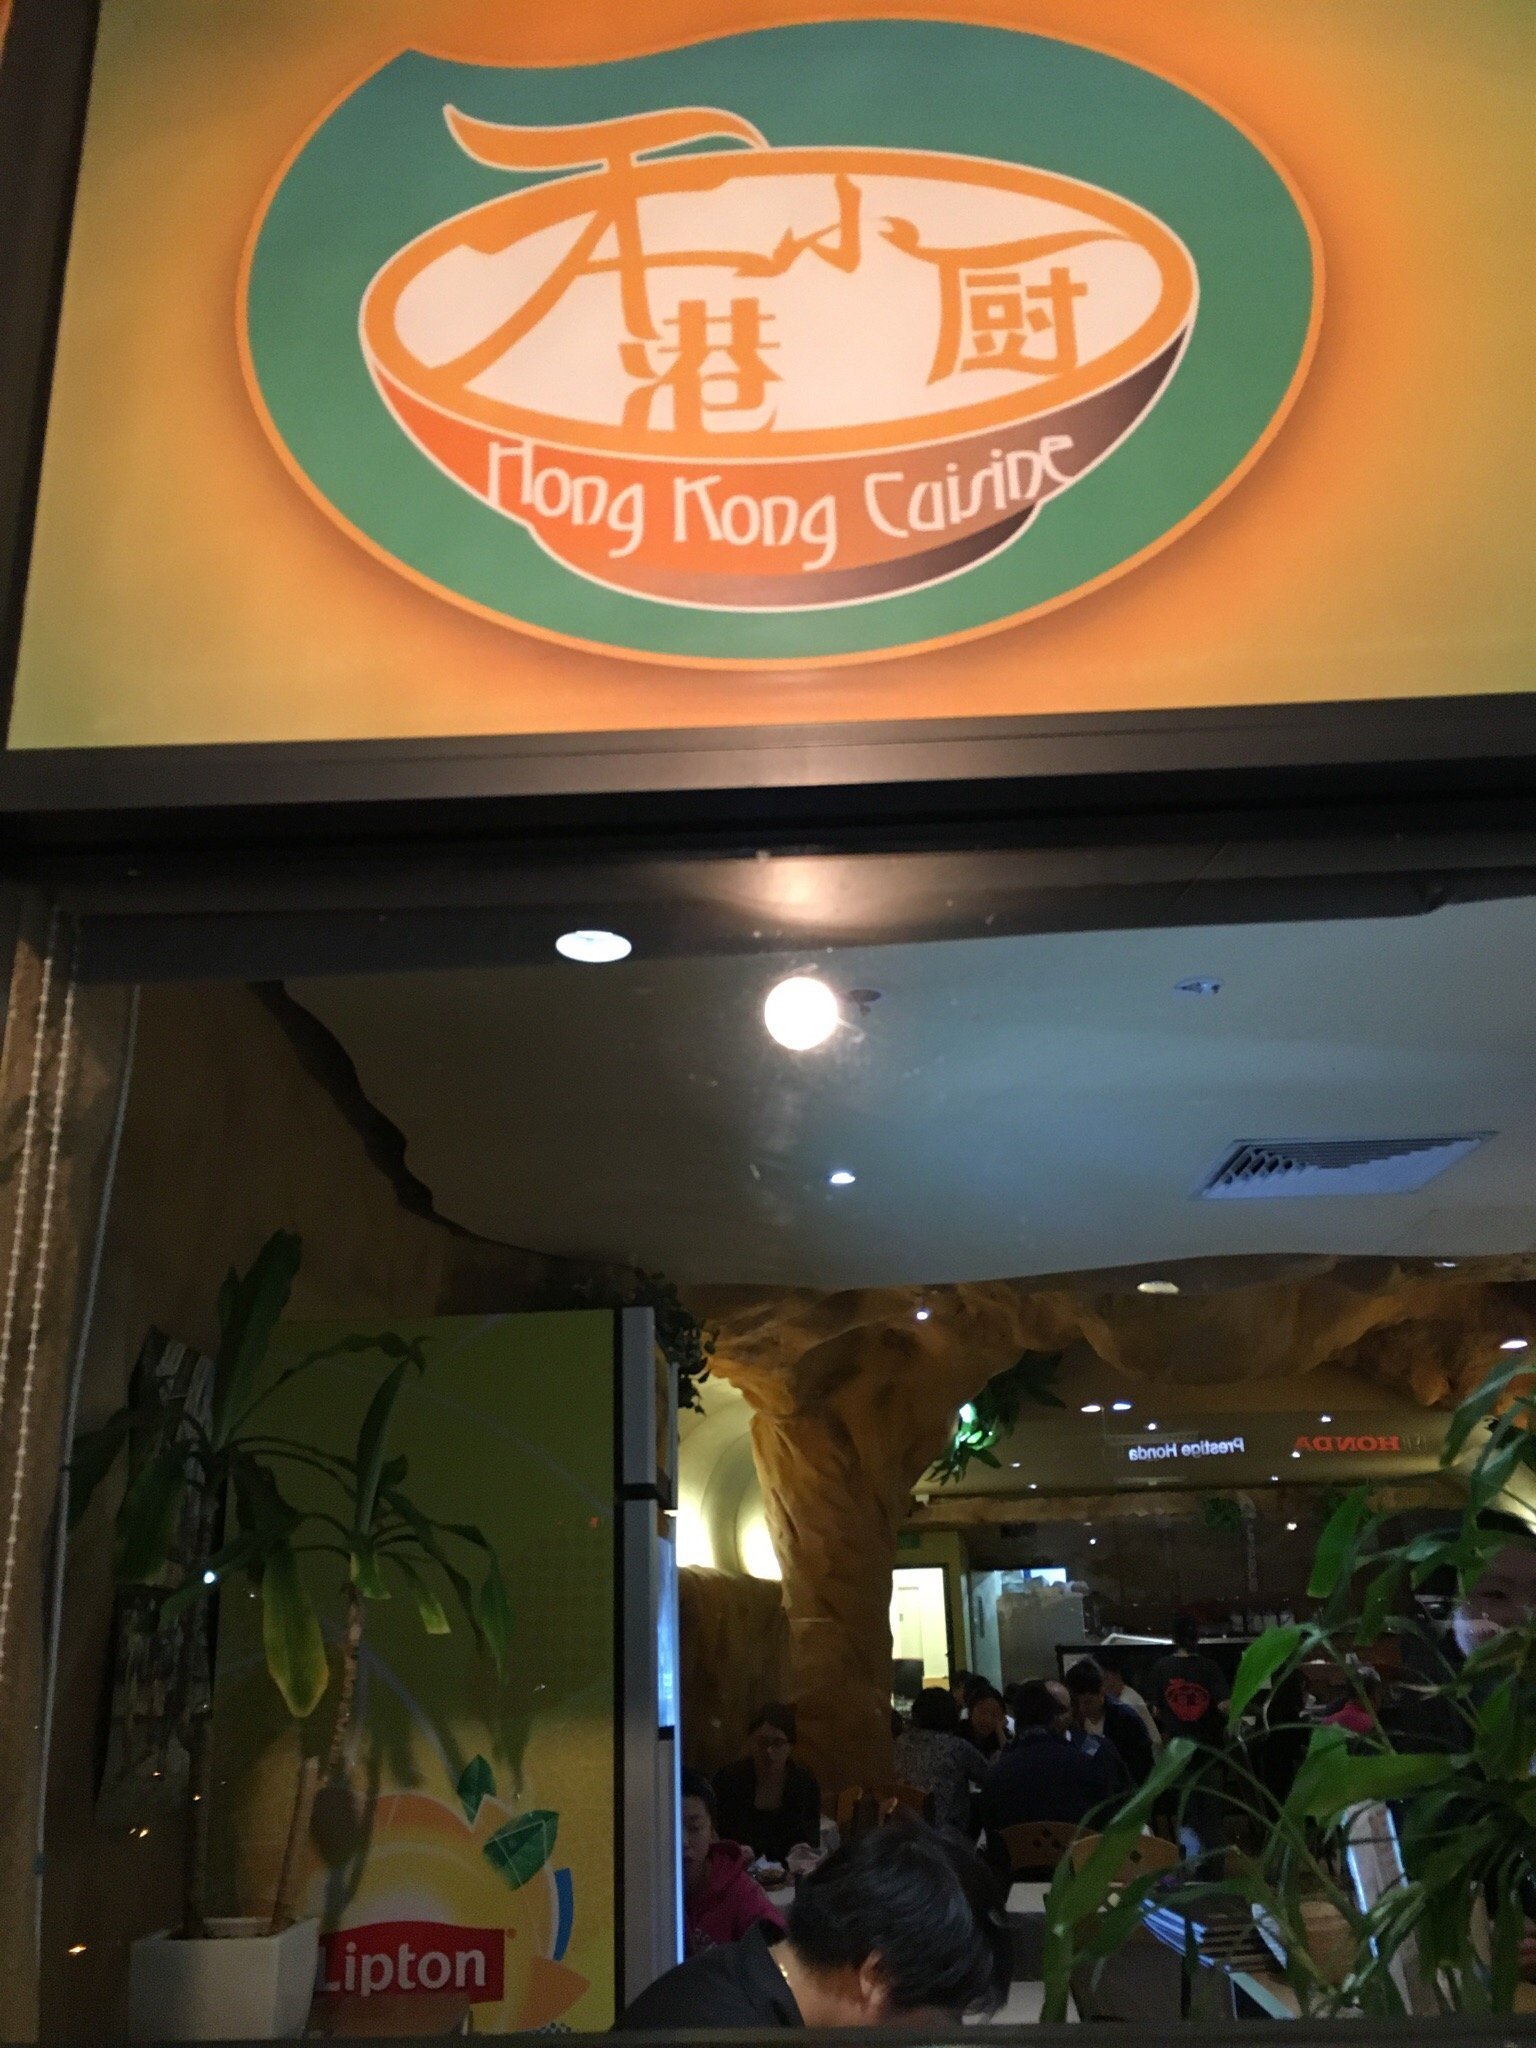 Hong Kong Cuisine - thumb 3